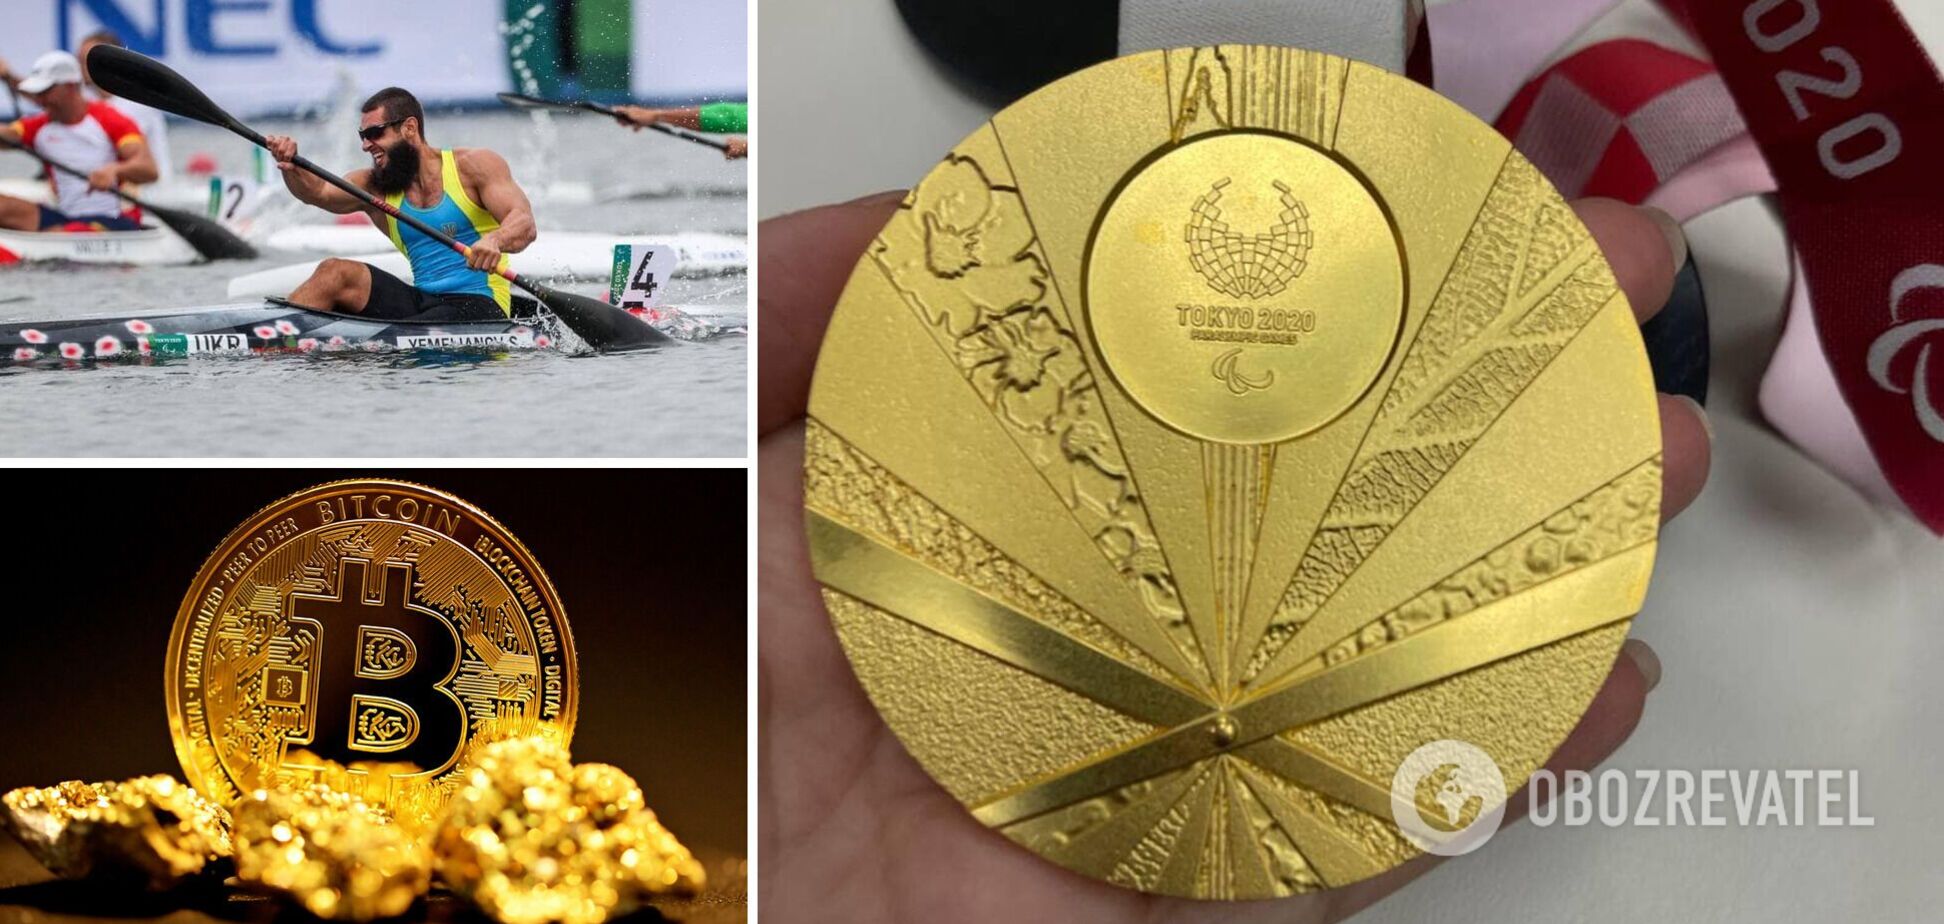 Золоту медаль українського паралімпійського чемпіона Сергія Ємельянова продали на аукціоні